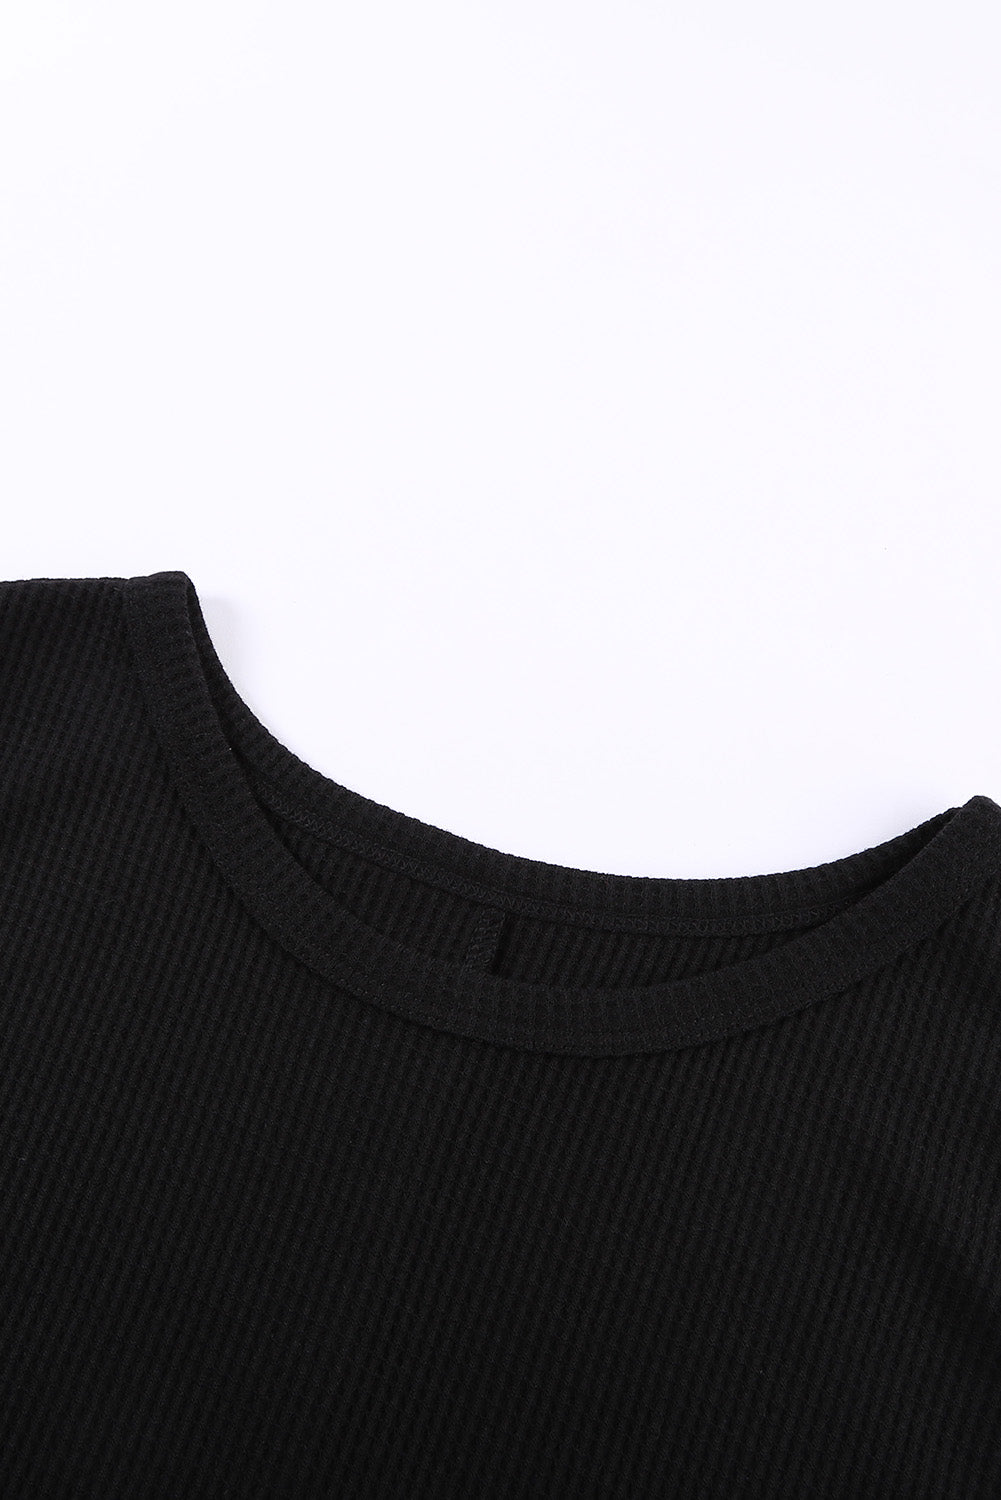 Crna majica bez rukava s okruglim izrezom